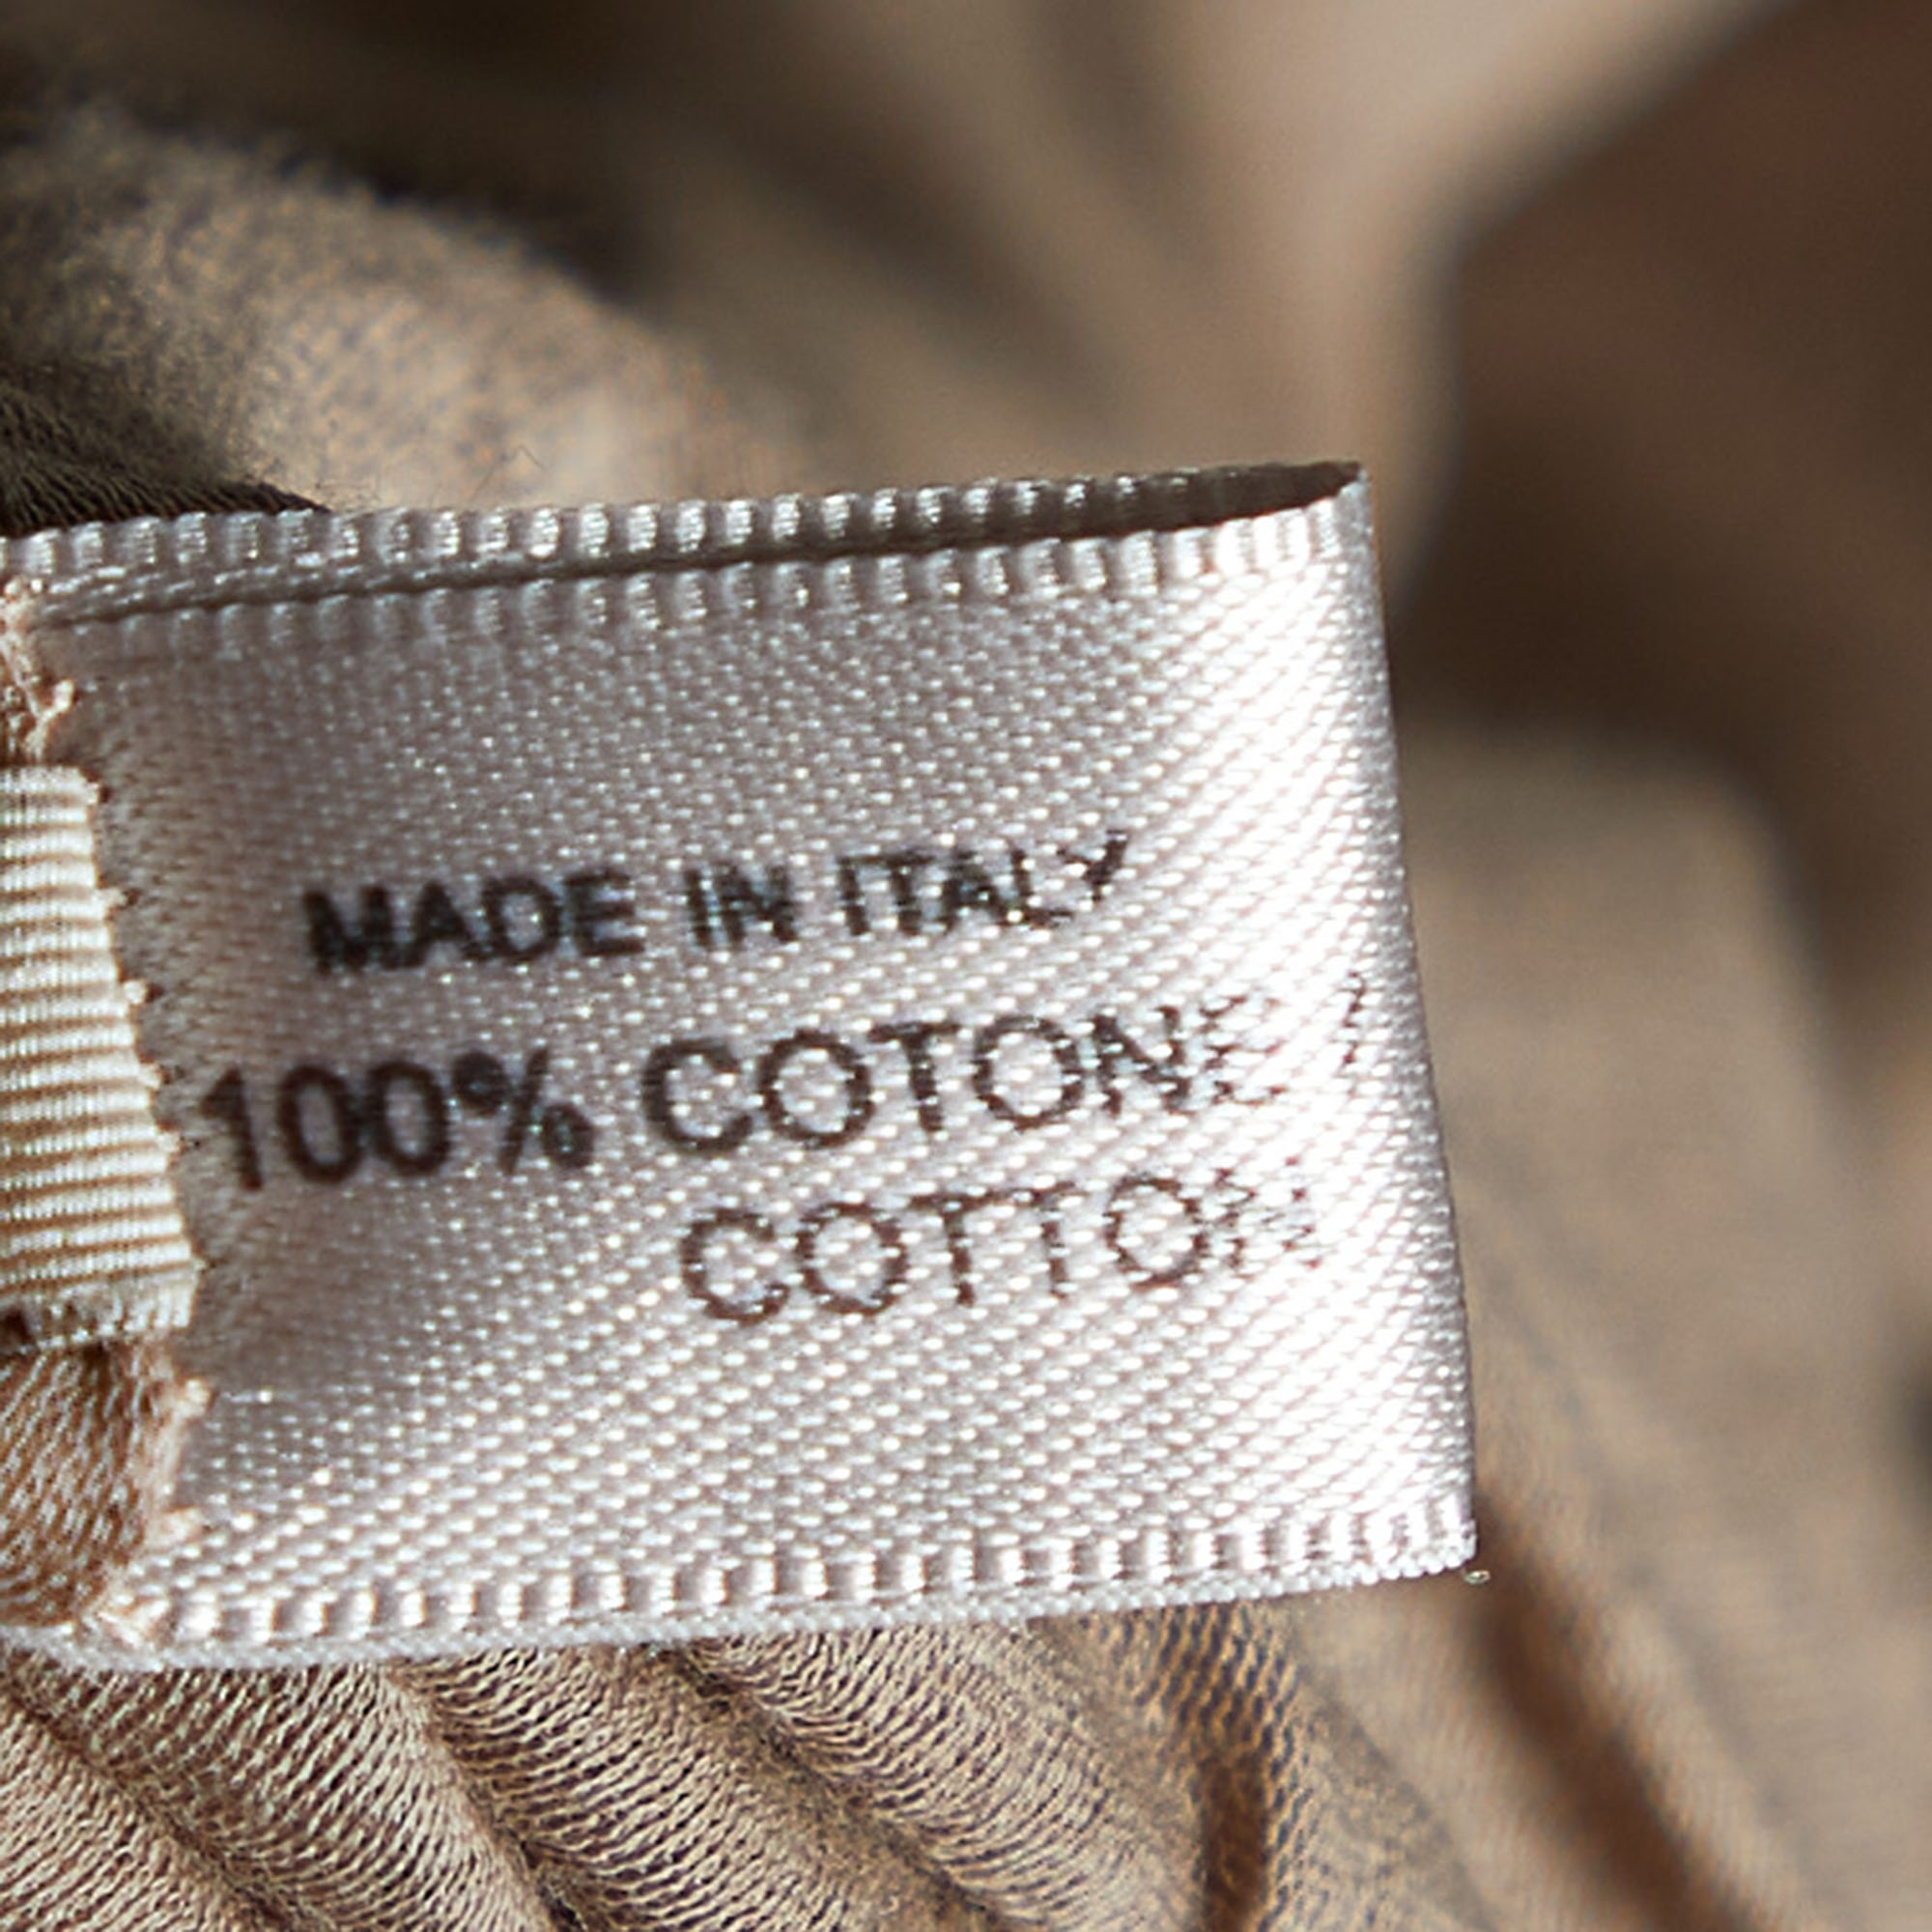 Bottega Veneta Two Tone Cotton Knit T-shirt M